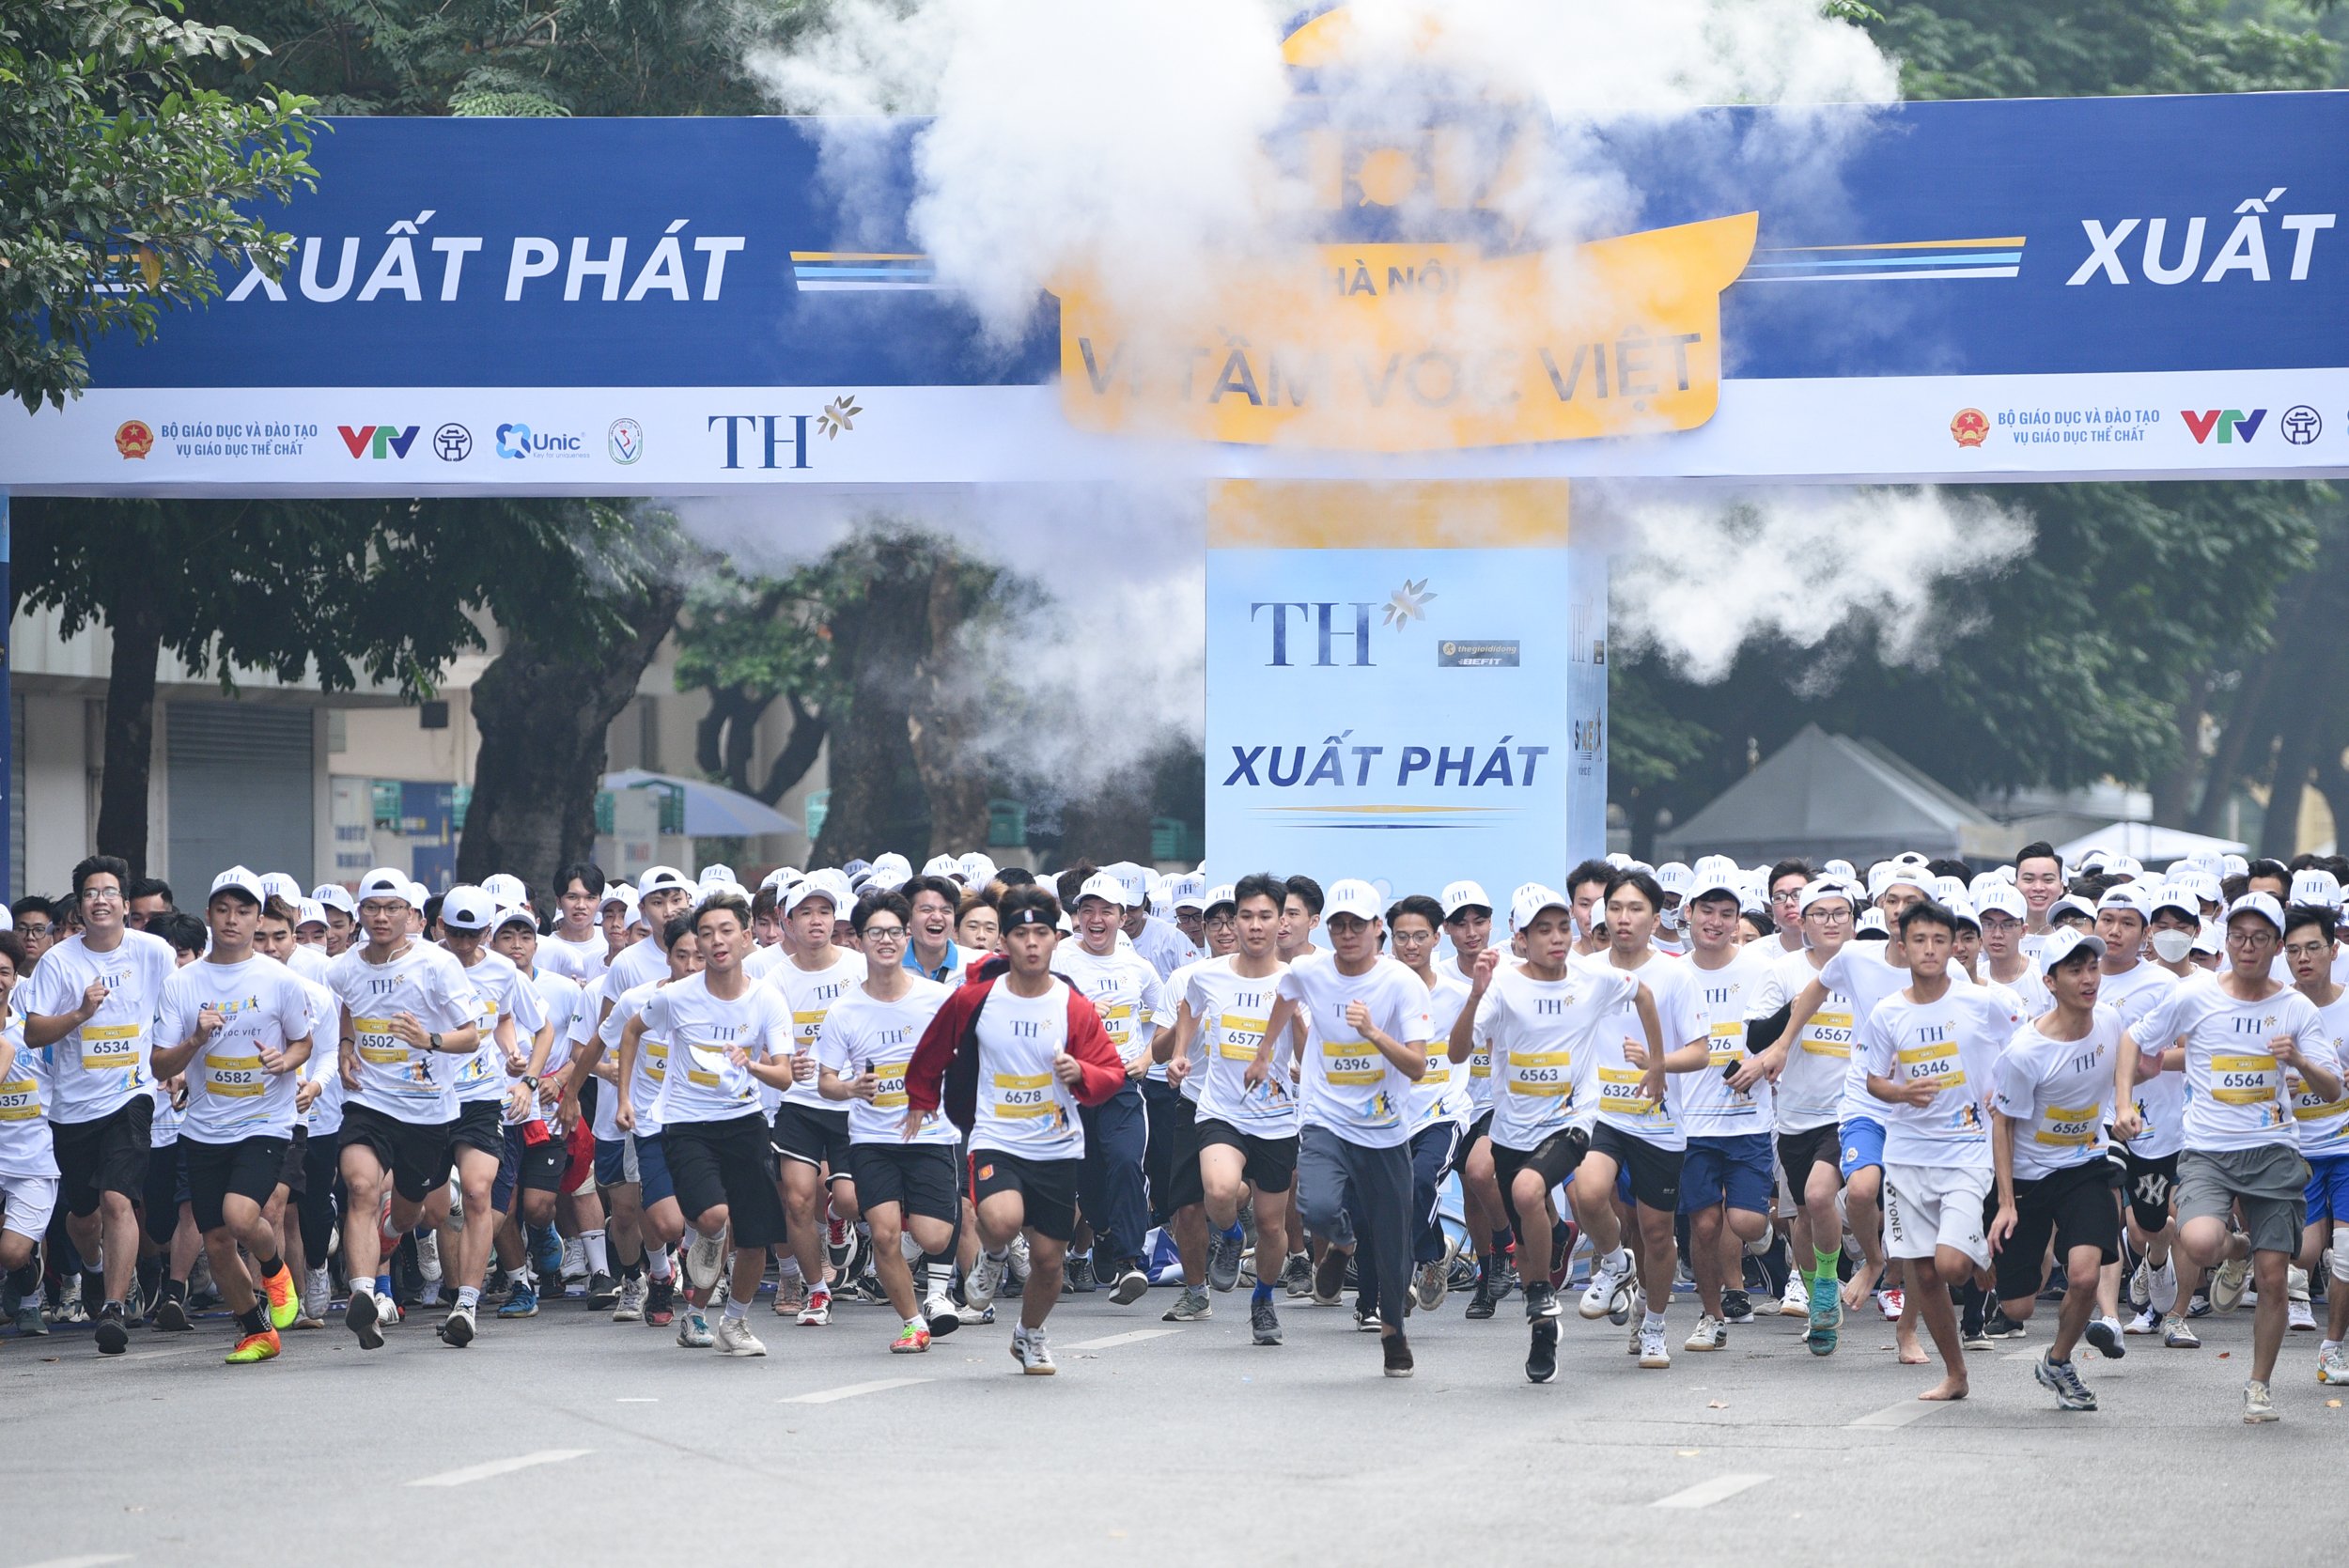 Giải chạy S-Race với sự tham gia của 4.200 học sinh, sinh viên, thầy cô giáo và cha mẹ học sinh ở Hà Nội sáng 13/11. Ảnh: Tùng Đinh.